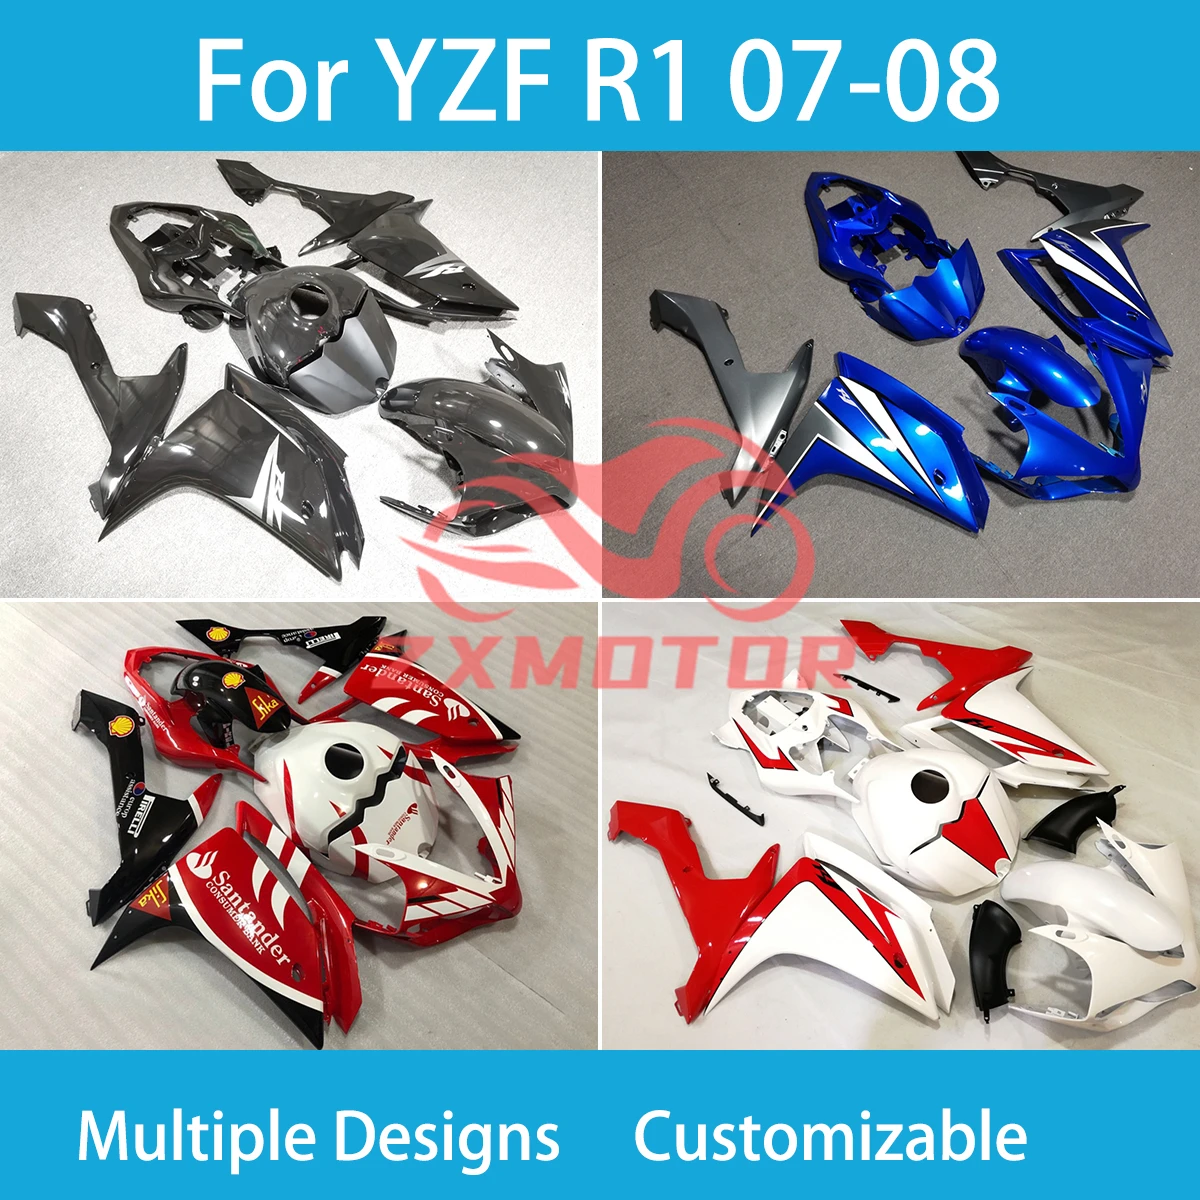 

Превосходный комплект обтекателей для Yamaha YZF R1 07 08 мотоциклетные гонки из АБС-пластика на заказ Высококачественные обтекатели R 1 2007 2008